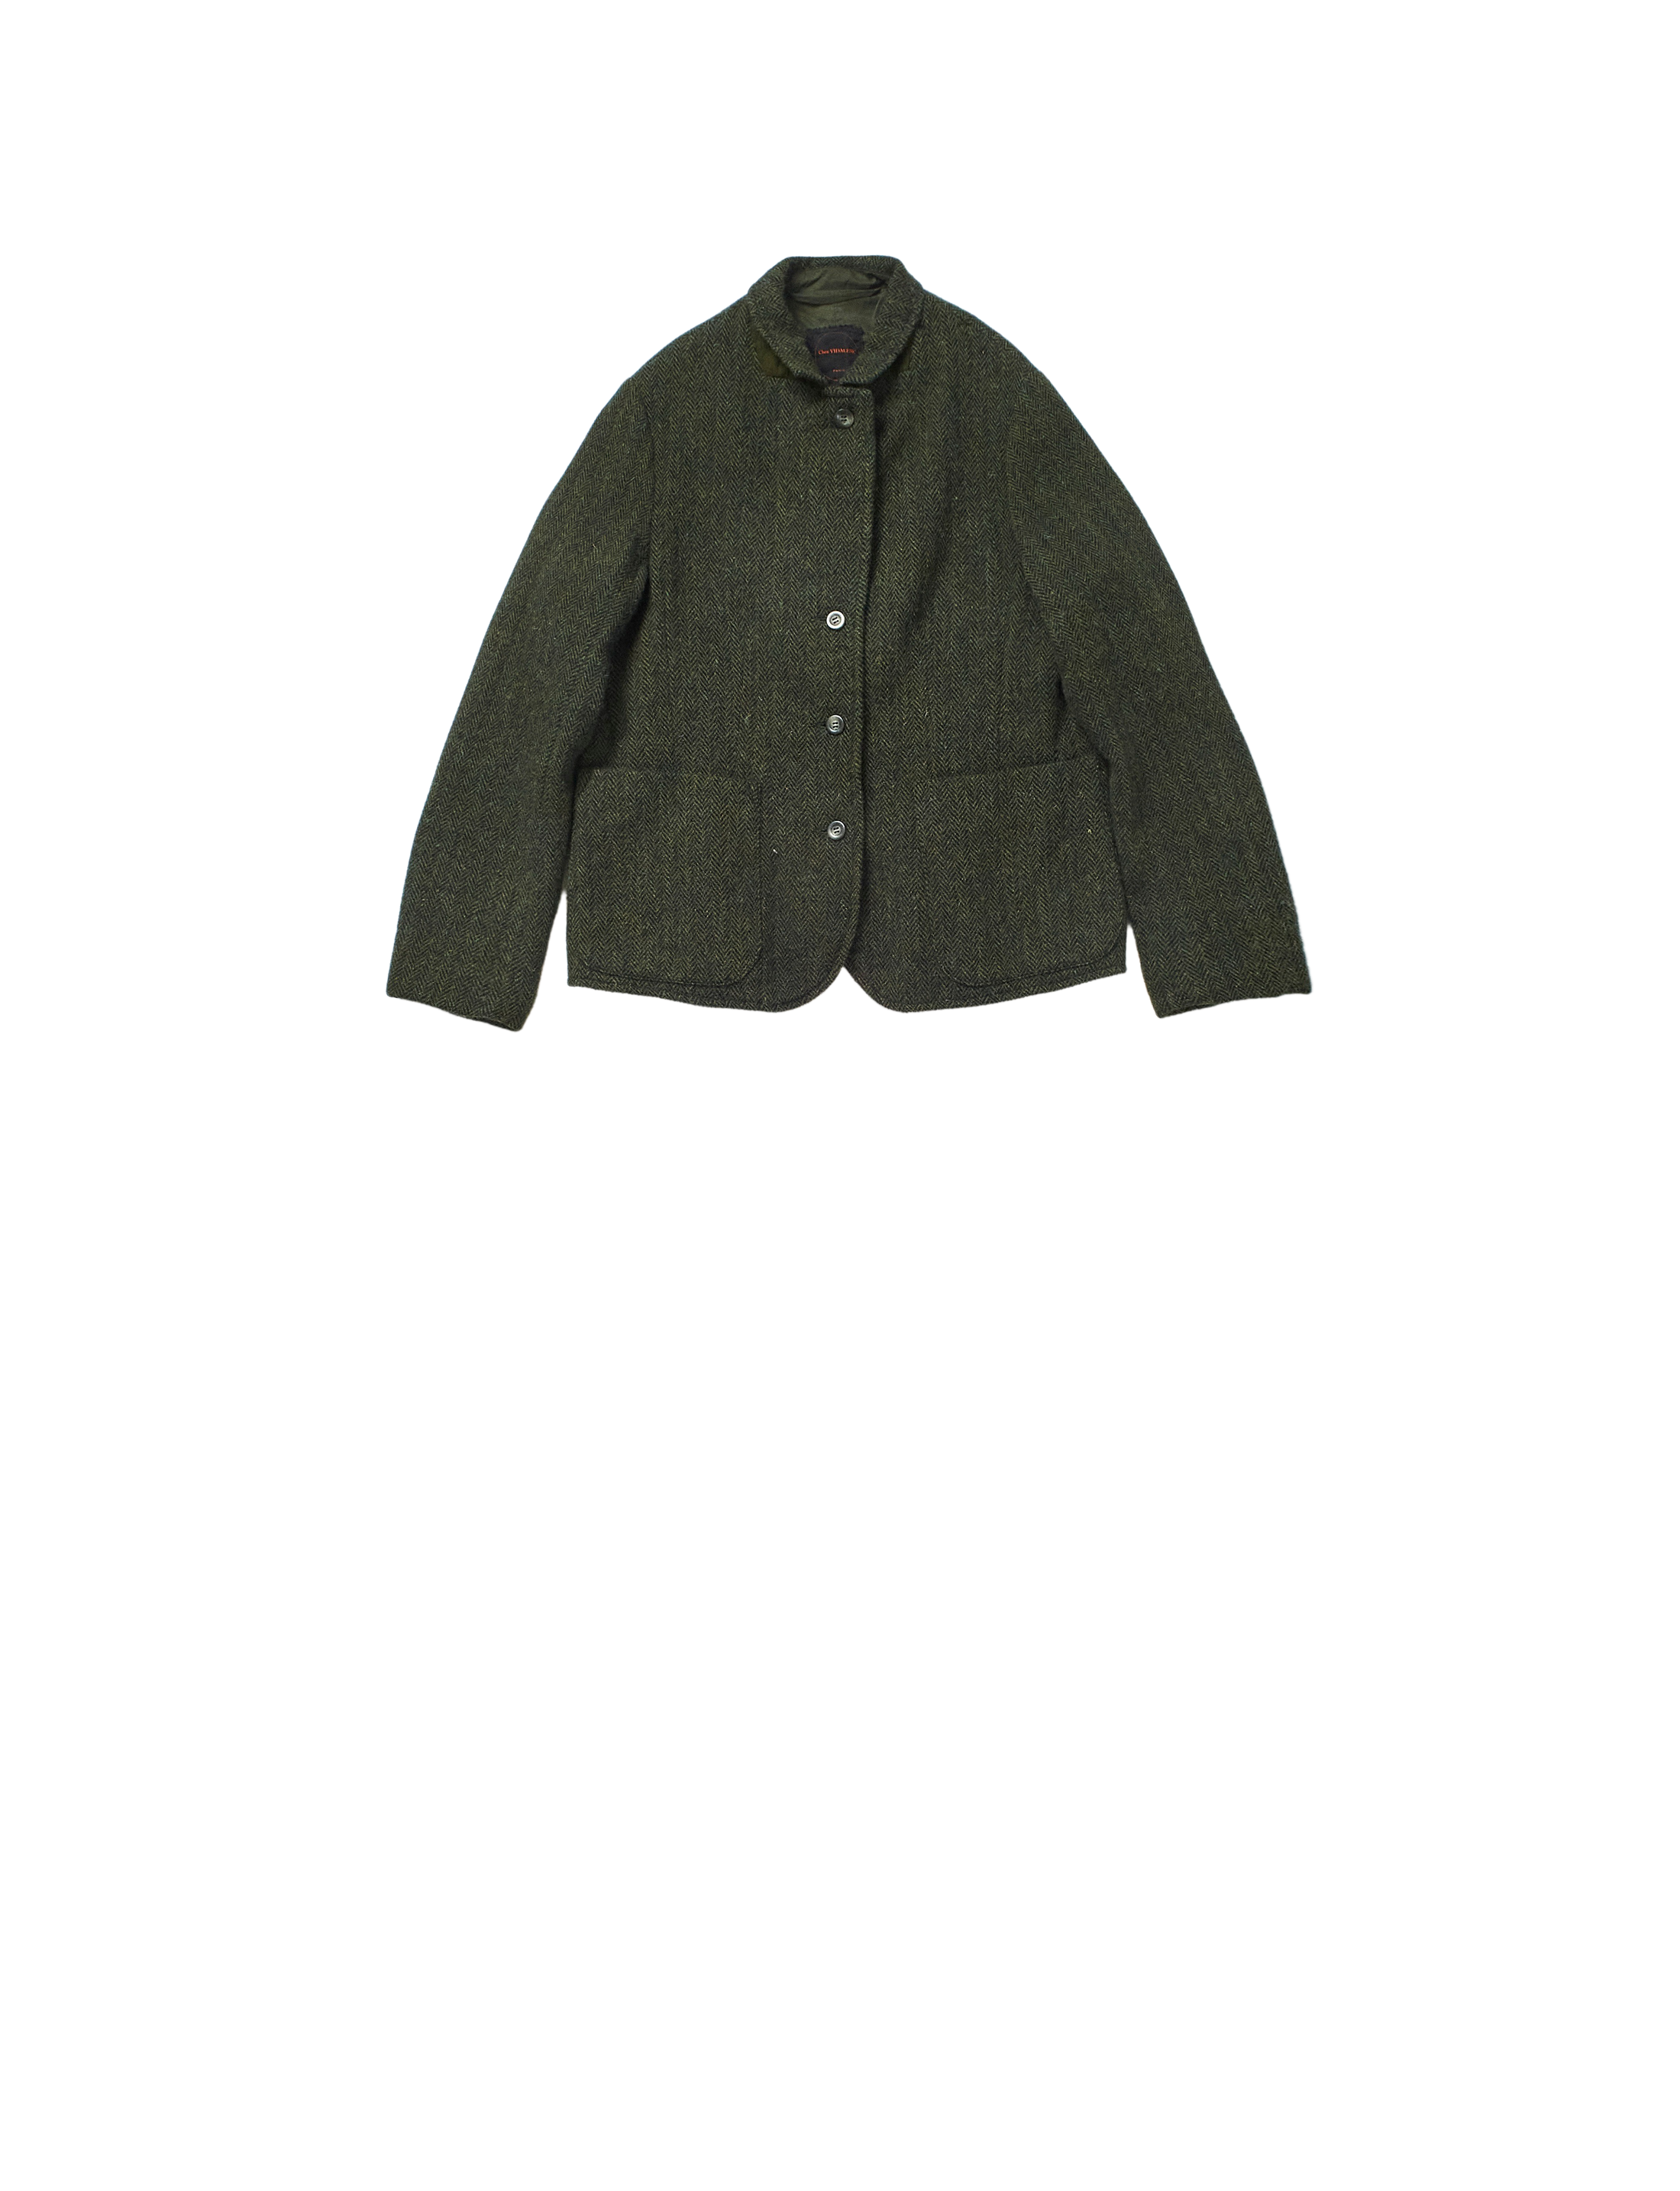 simple jacket